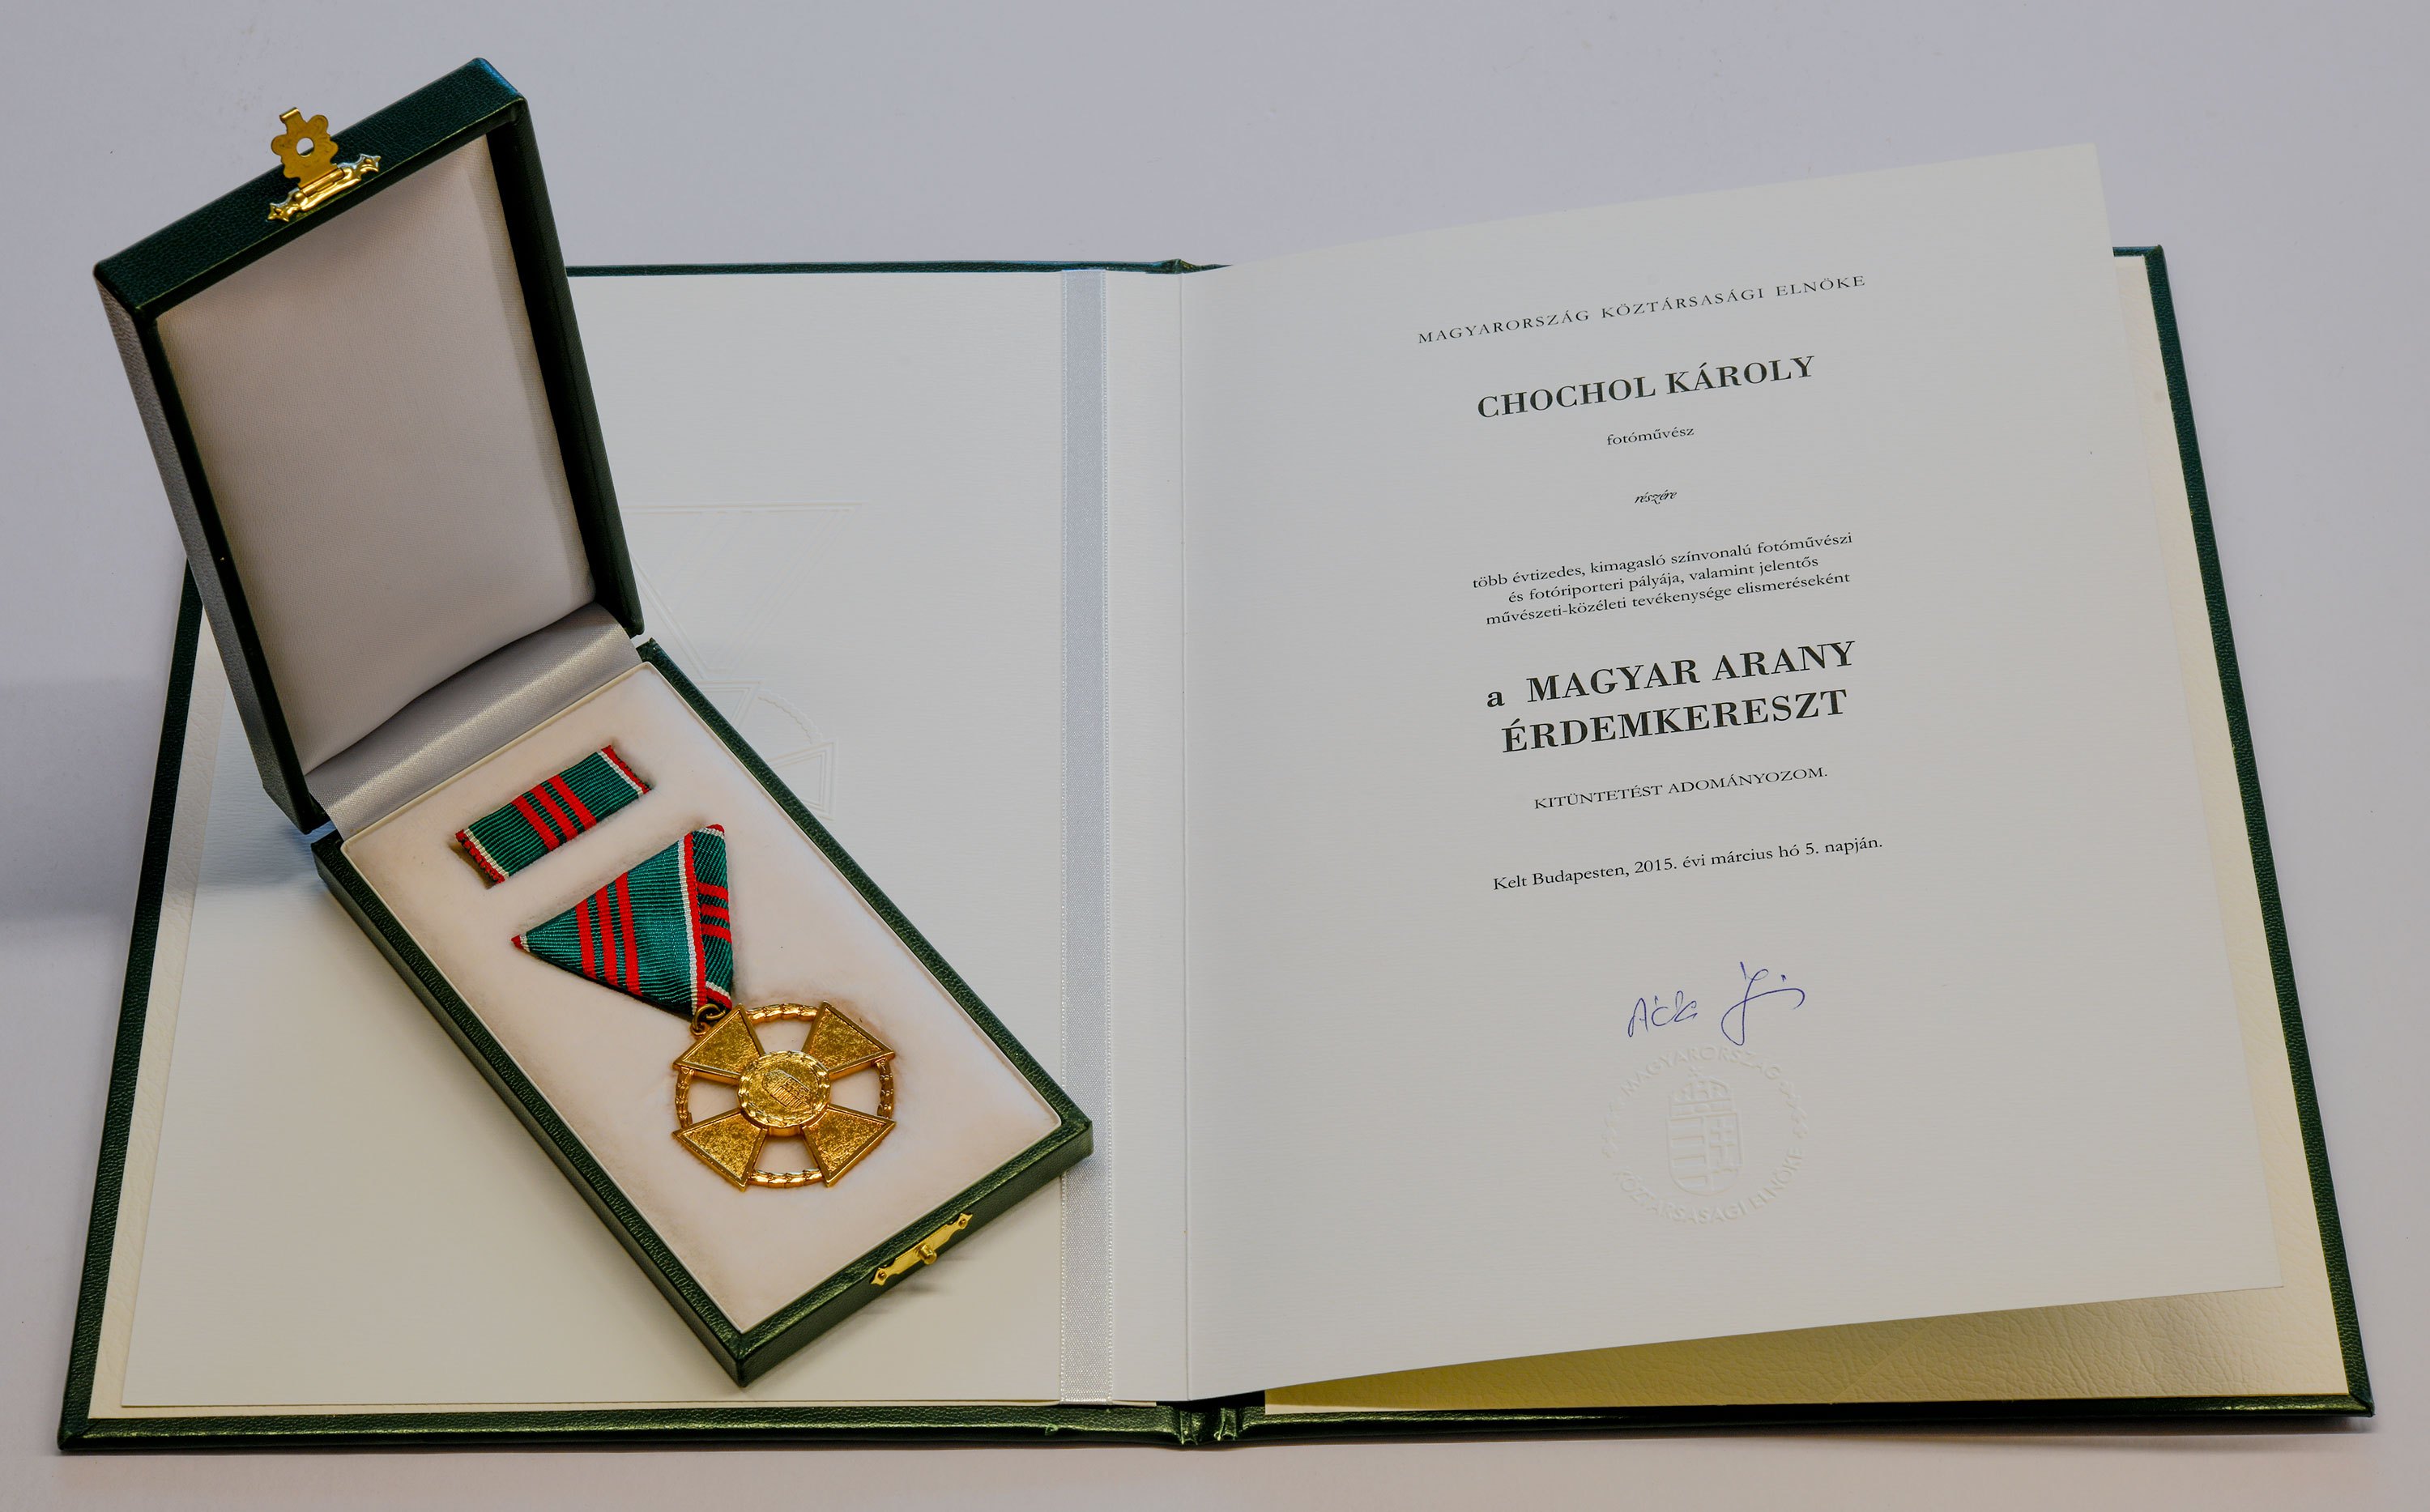 <b>Magyar Arany Érdemkereszt polgári tagozata kitüntetés</b> Magyarország köztársasági elnökétől, Áder Jánostól.<br><i>„A Magyar Arany Érdemkereszt az első jelentősebb állami díj, amit kaptam, nagyon örültem neki.”</i>  <br>2015. március 16. <i>oklevél, díj</i> <br><i>(BFL XV.19.g.4.06)</i>